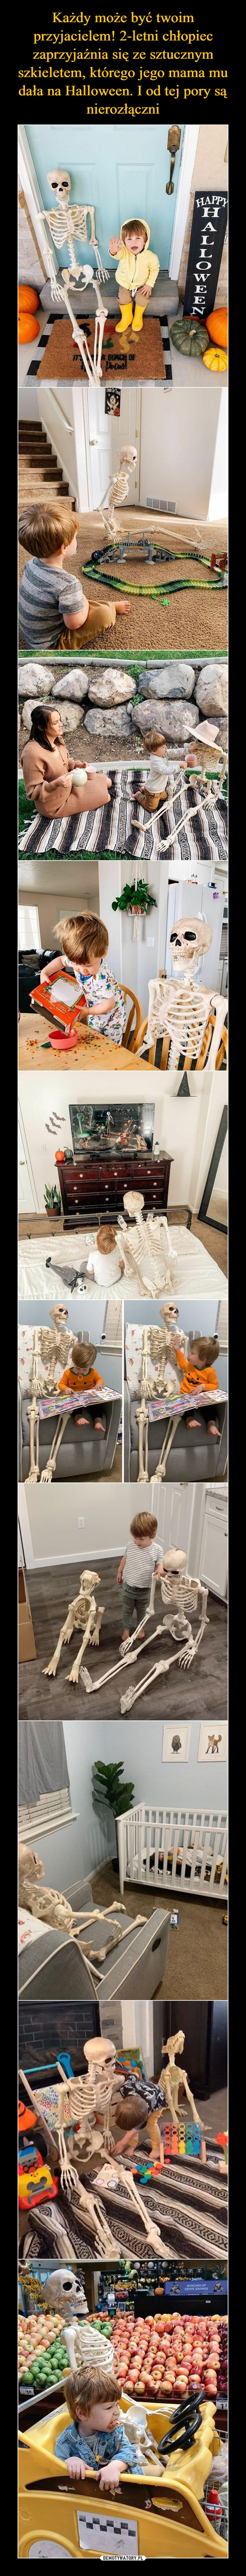 Każdy może być twoim przyjacielem! 2-letni chłopiec zaprzyjaźnia się ze sztucznym szkieletem, którego jego mama mu dała na Halloween. I od tej pory są nierozłączni